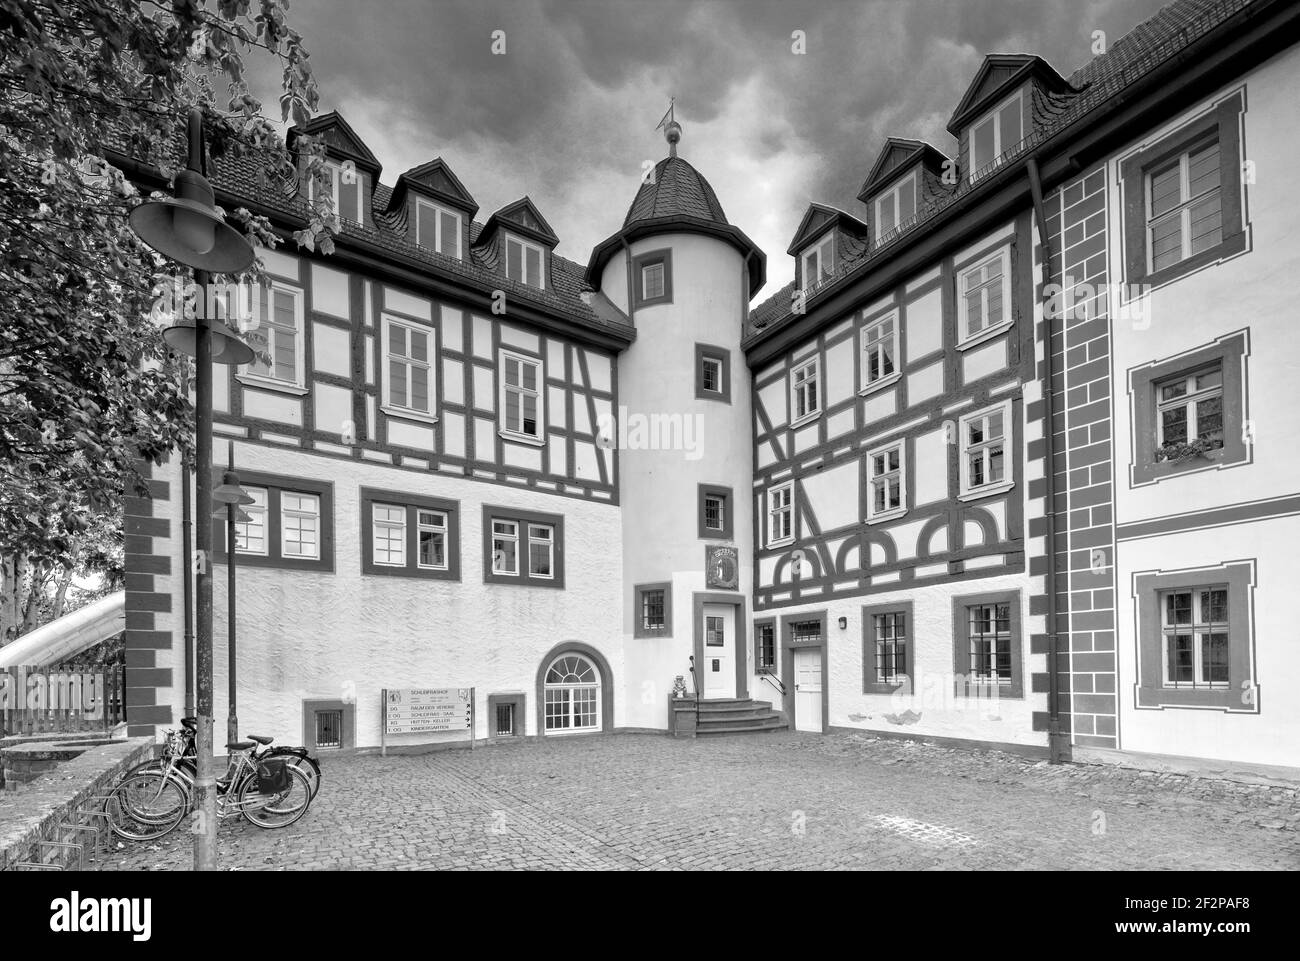 Schleifrashof, siège aristocratique, manoir, vue sur la maison, vieille ville de Salmünster, Bad Soden-Salmuenster, Kinzigtal, Hesse, Allemagne, Europe Banque D'Images